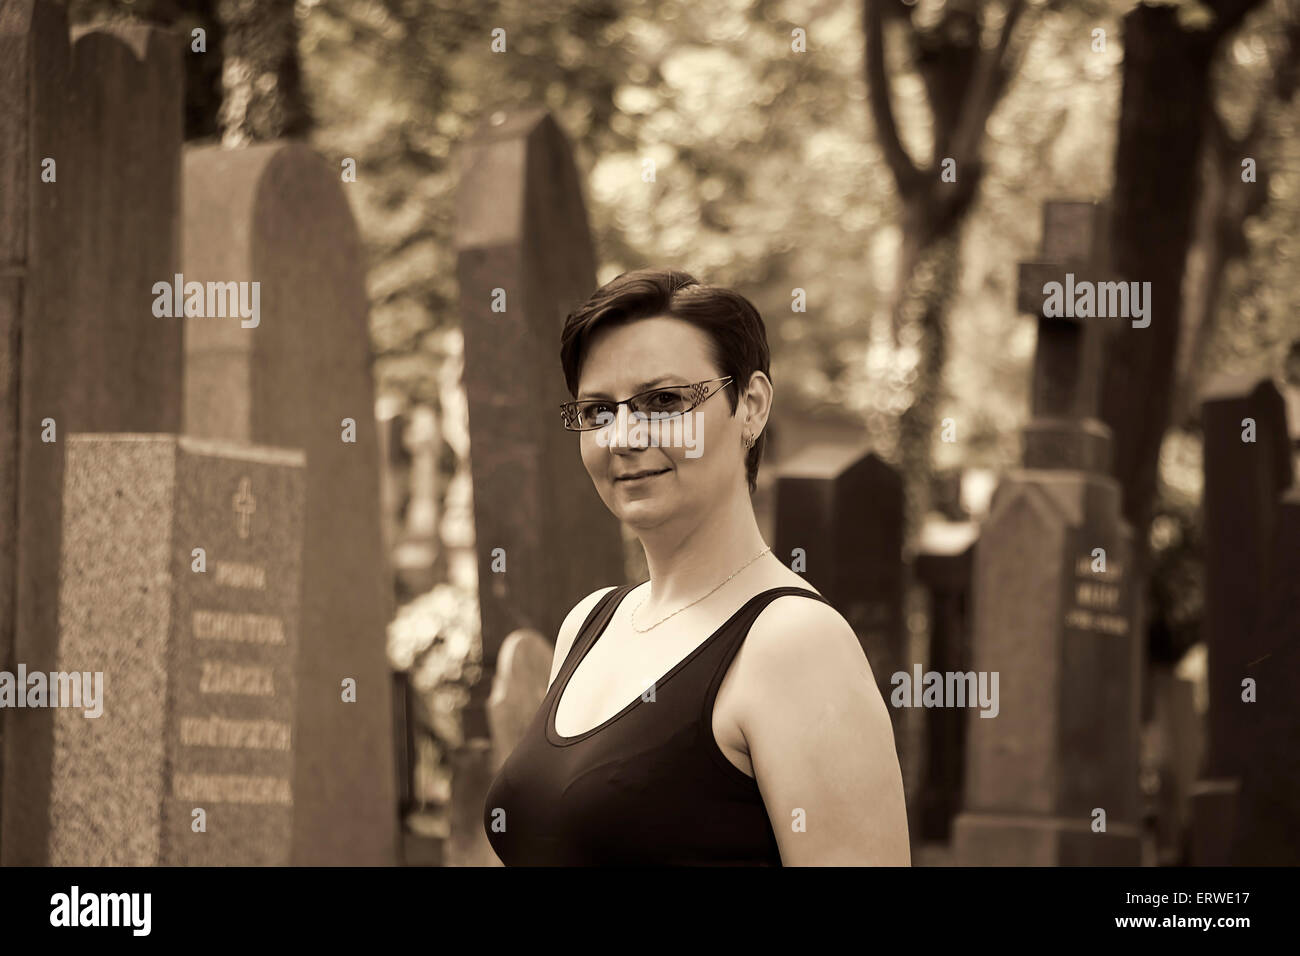 Porträt der jungen Frau auf einem Friedhof. Schwarz / weiß-Vintage-Look, melancholische Stimmung. Stockfoto